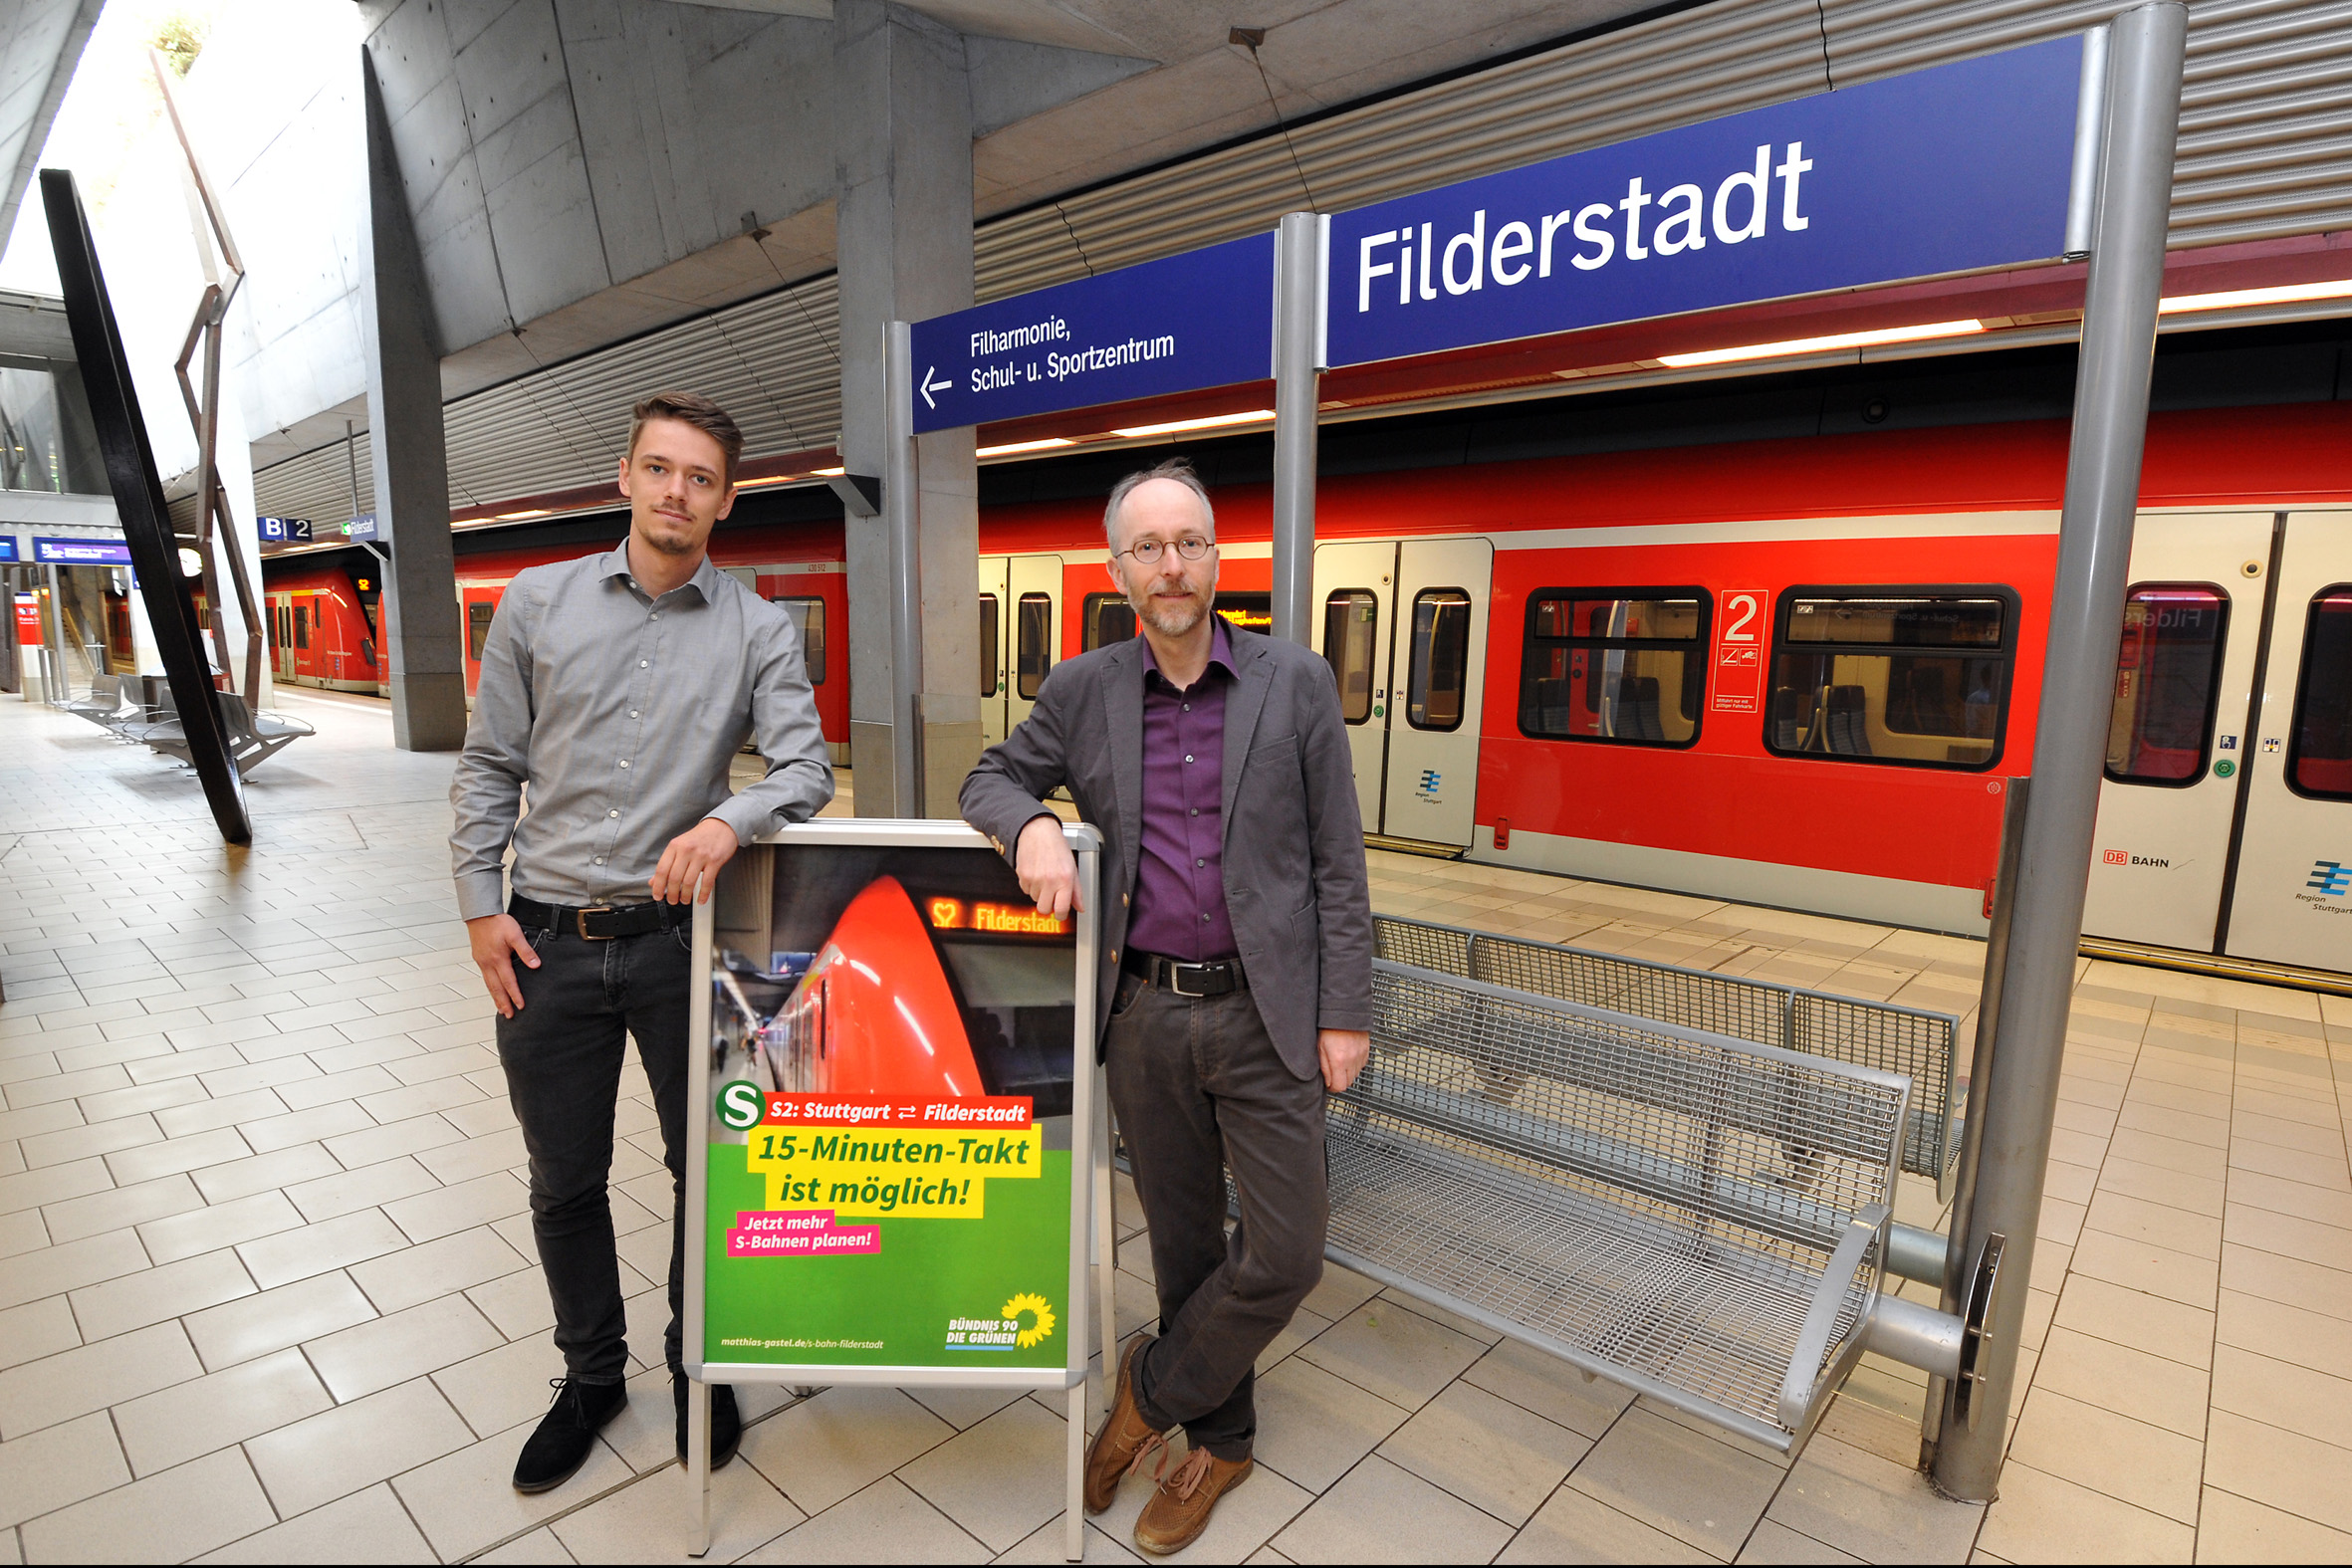 S‑Bahn: Taktverdichtung nach Filderstadt möglich – und sinnvoll!